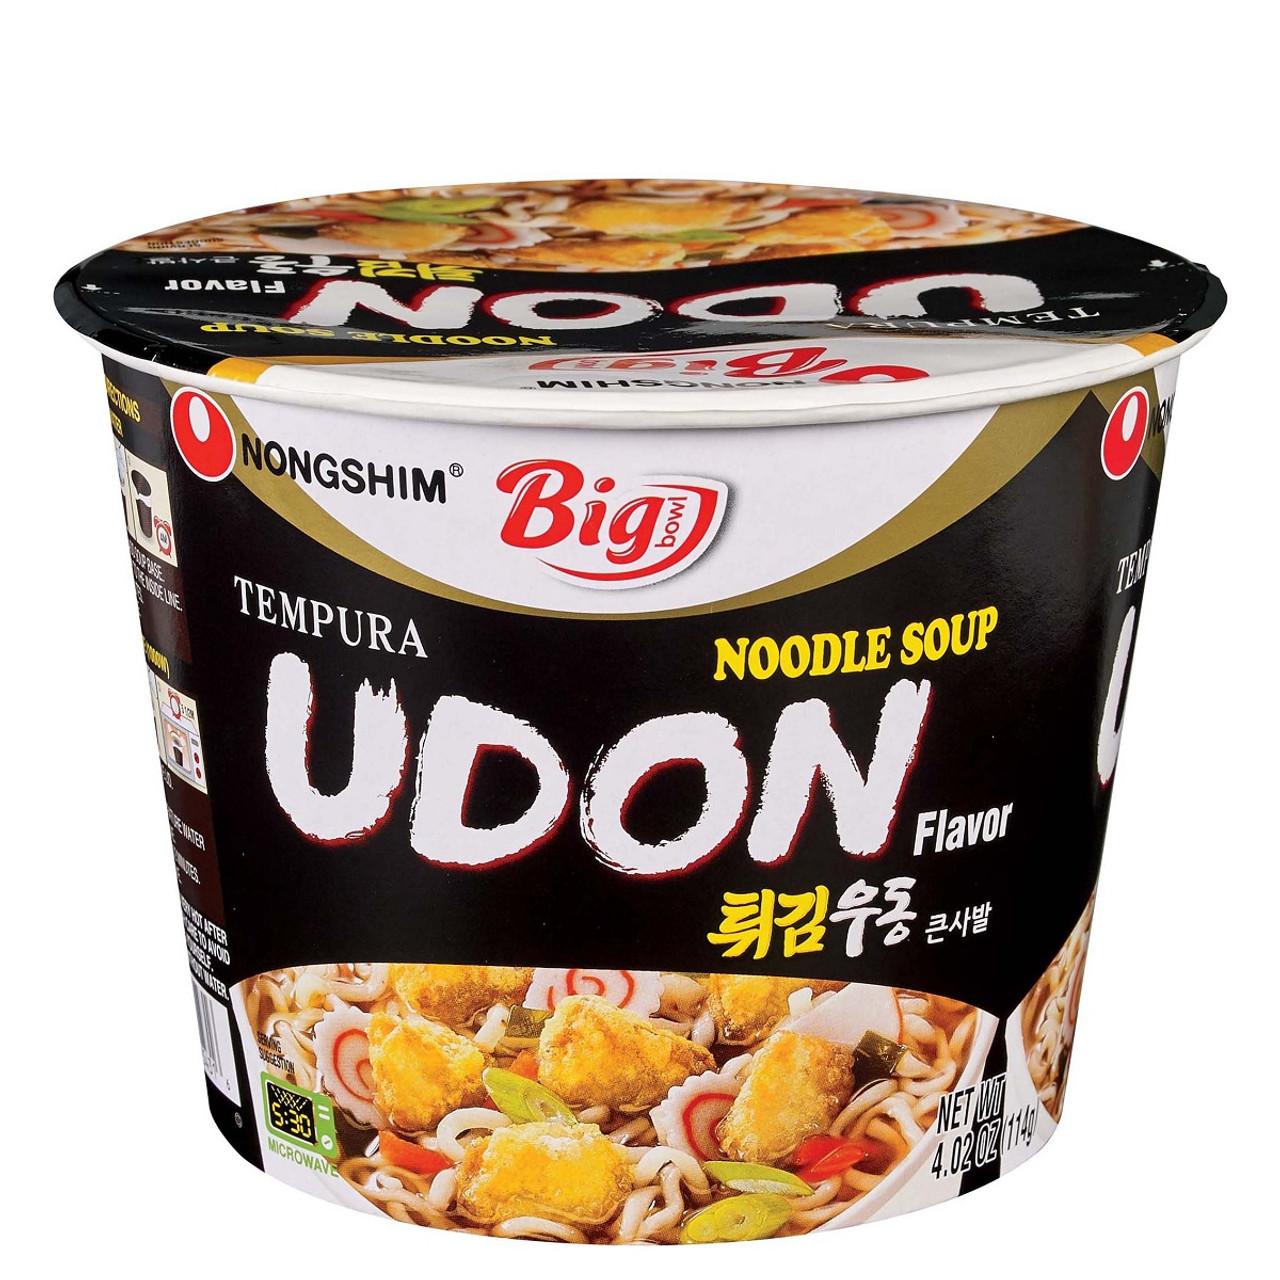 nongshim-tempura-udon-flavour-noodle-soup-l